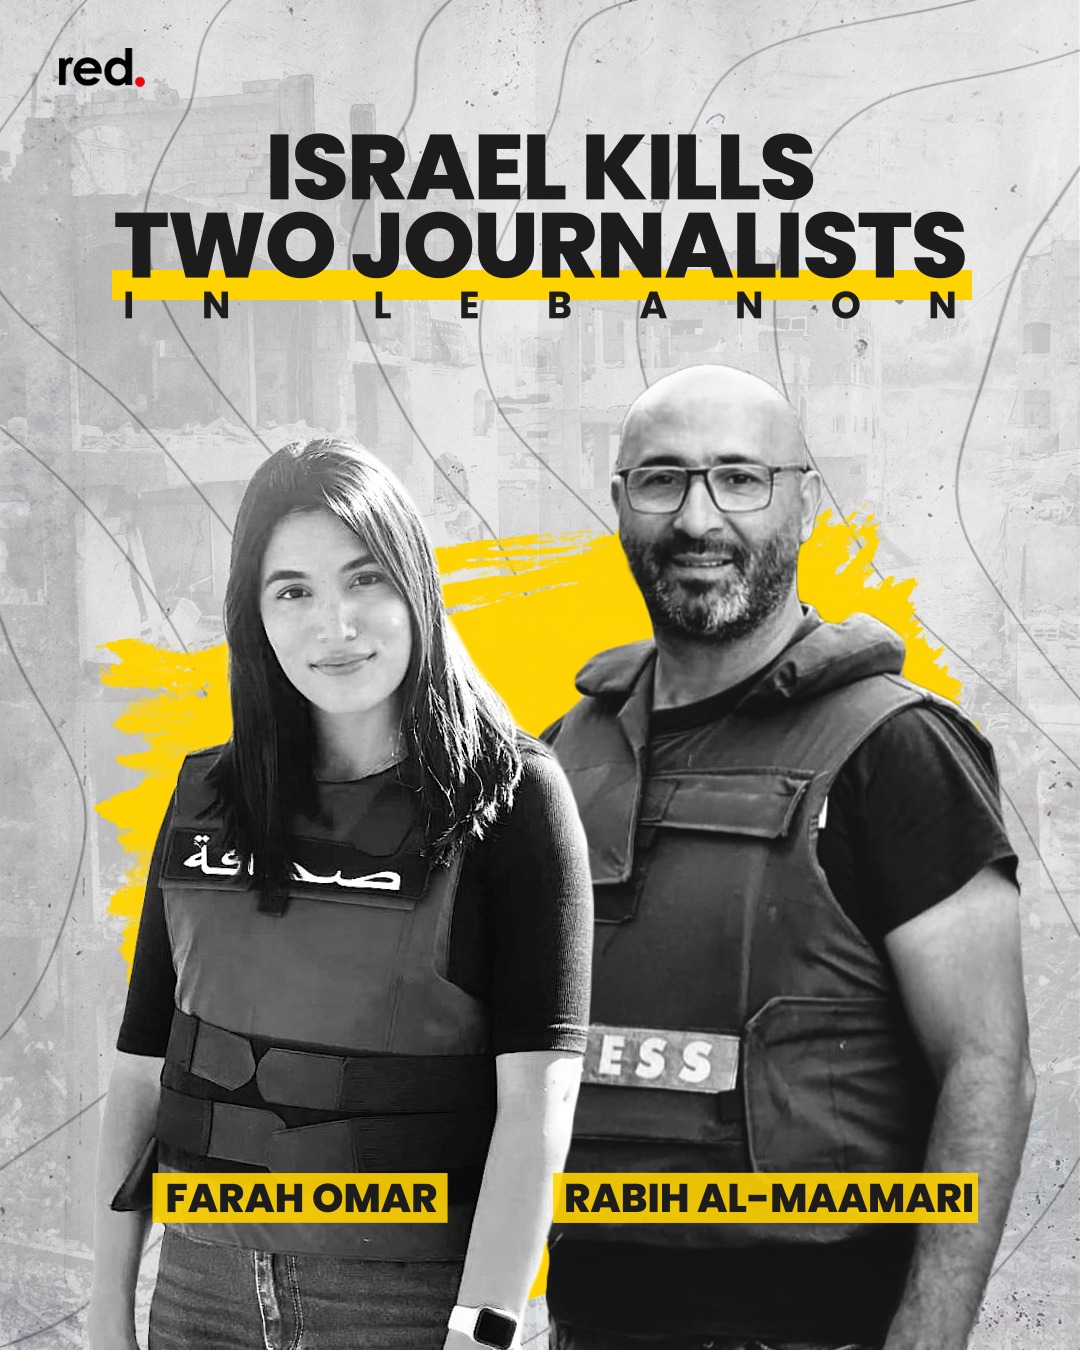 46* giorno di guerra in Medio Oriente. Si avvicina un accordo per un cessate il fuoco di 5 giorni e la liberazione di 50 ostaggi. Intanto Israele uccide in Libano altri due giornalisti.